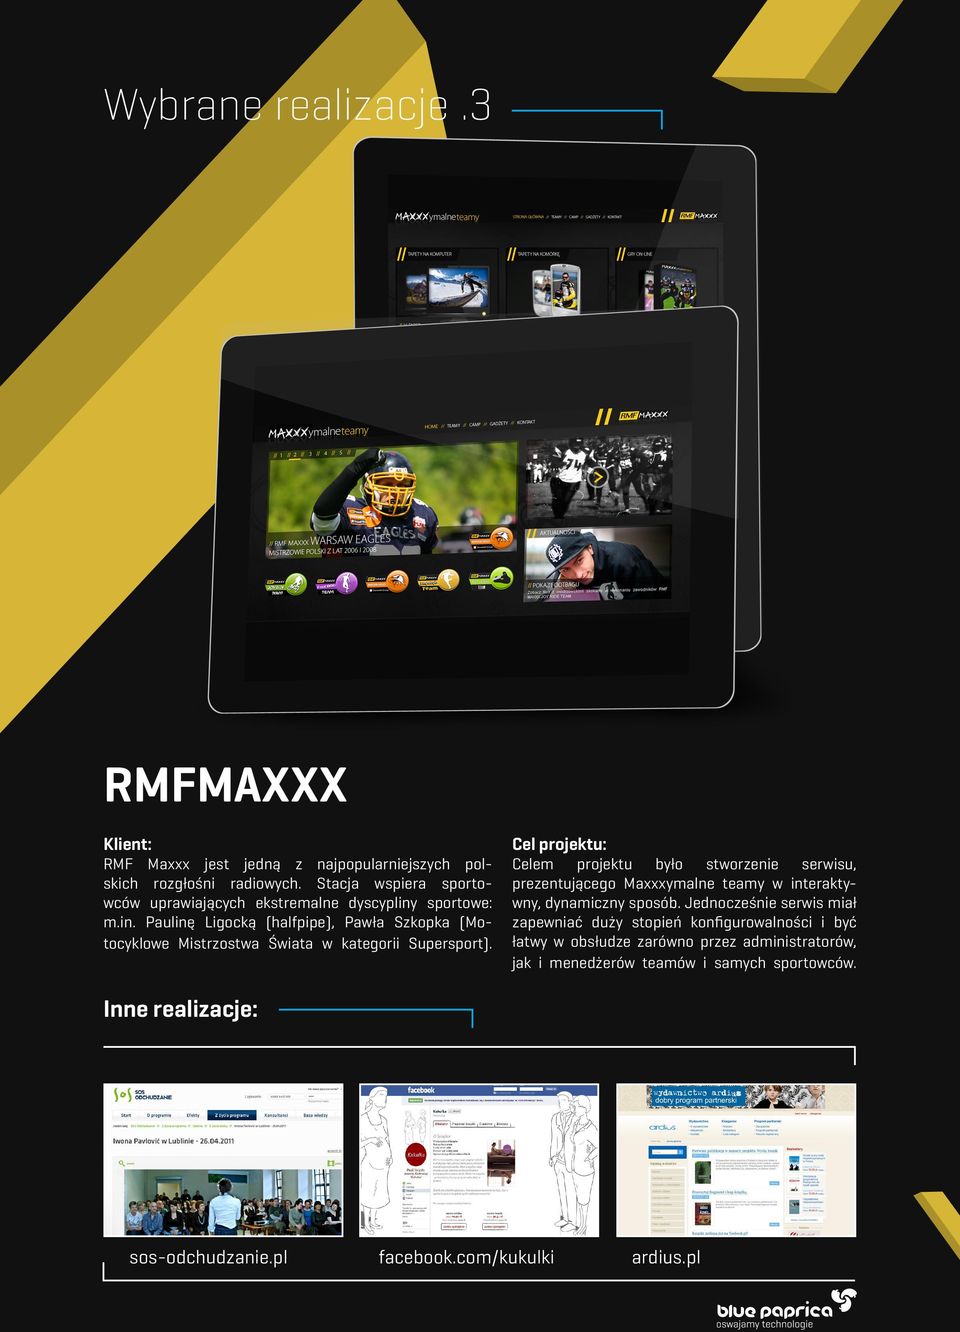 Cel projektu: Celem projektu było stworzenie serwisu, prezentującego Maxxxymalne teamy w interaktywny, dynamiczny sposób.